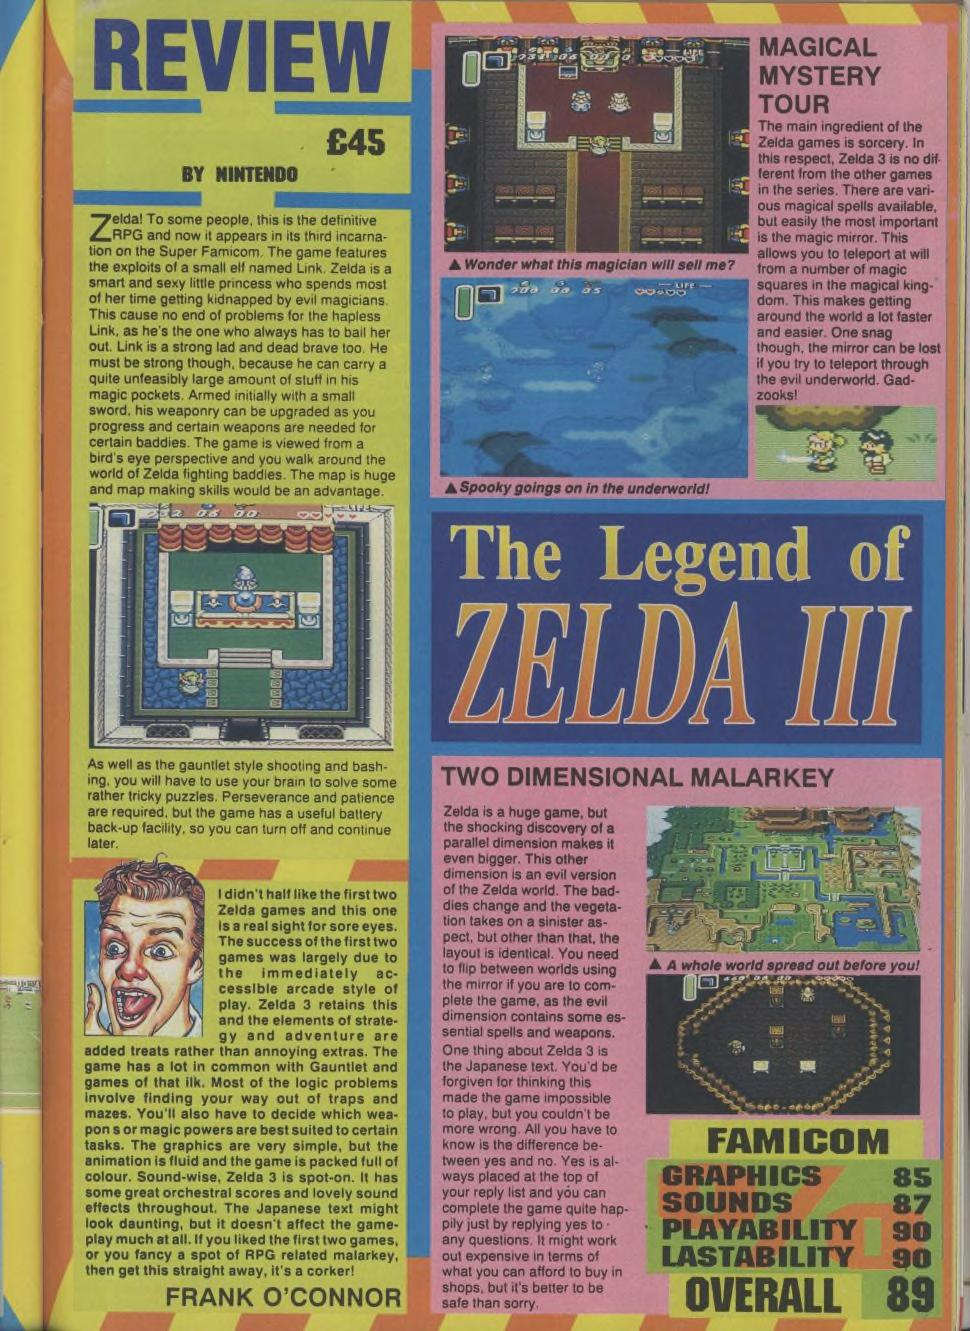 Počítačové videohry, vydanie 123 1992 02 EMAP Publishing GB 0068